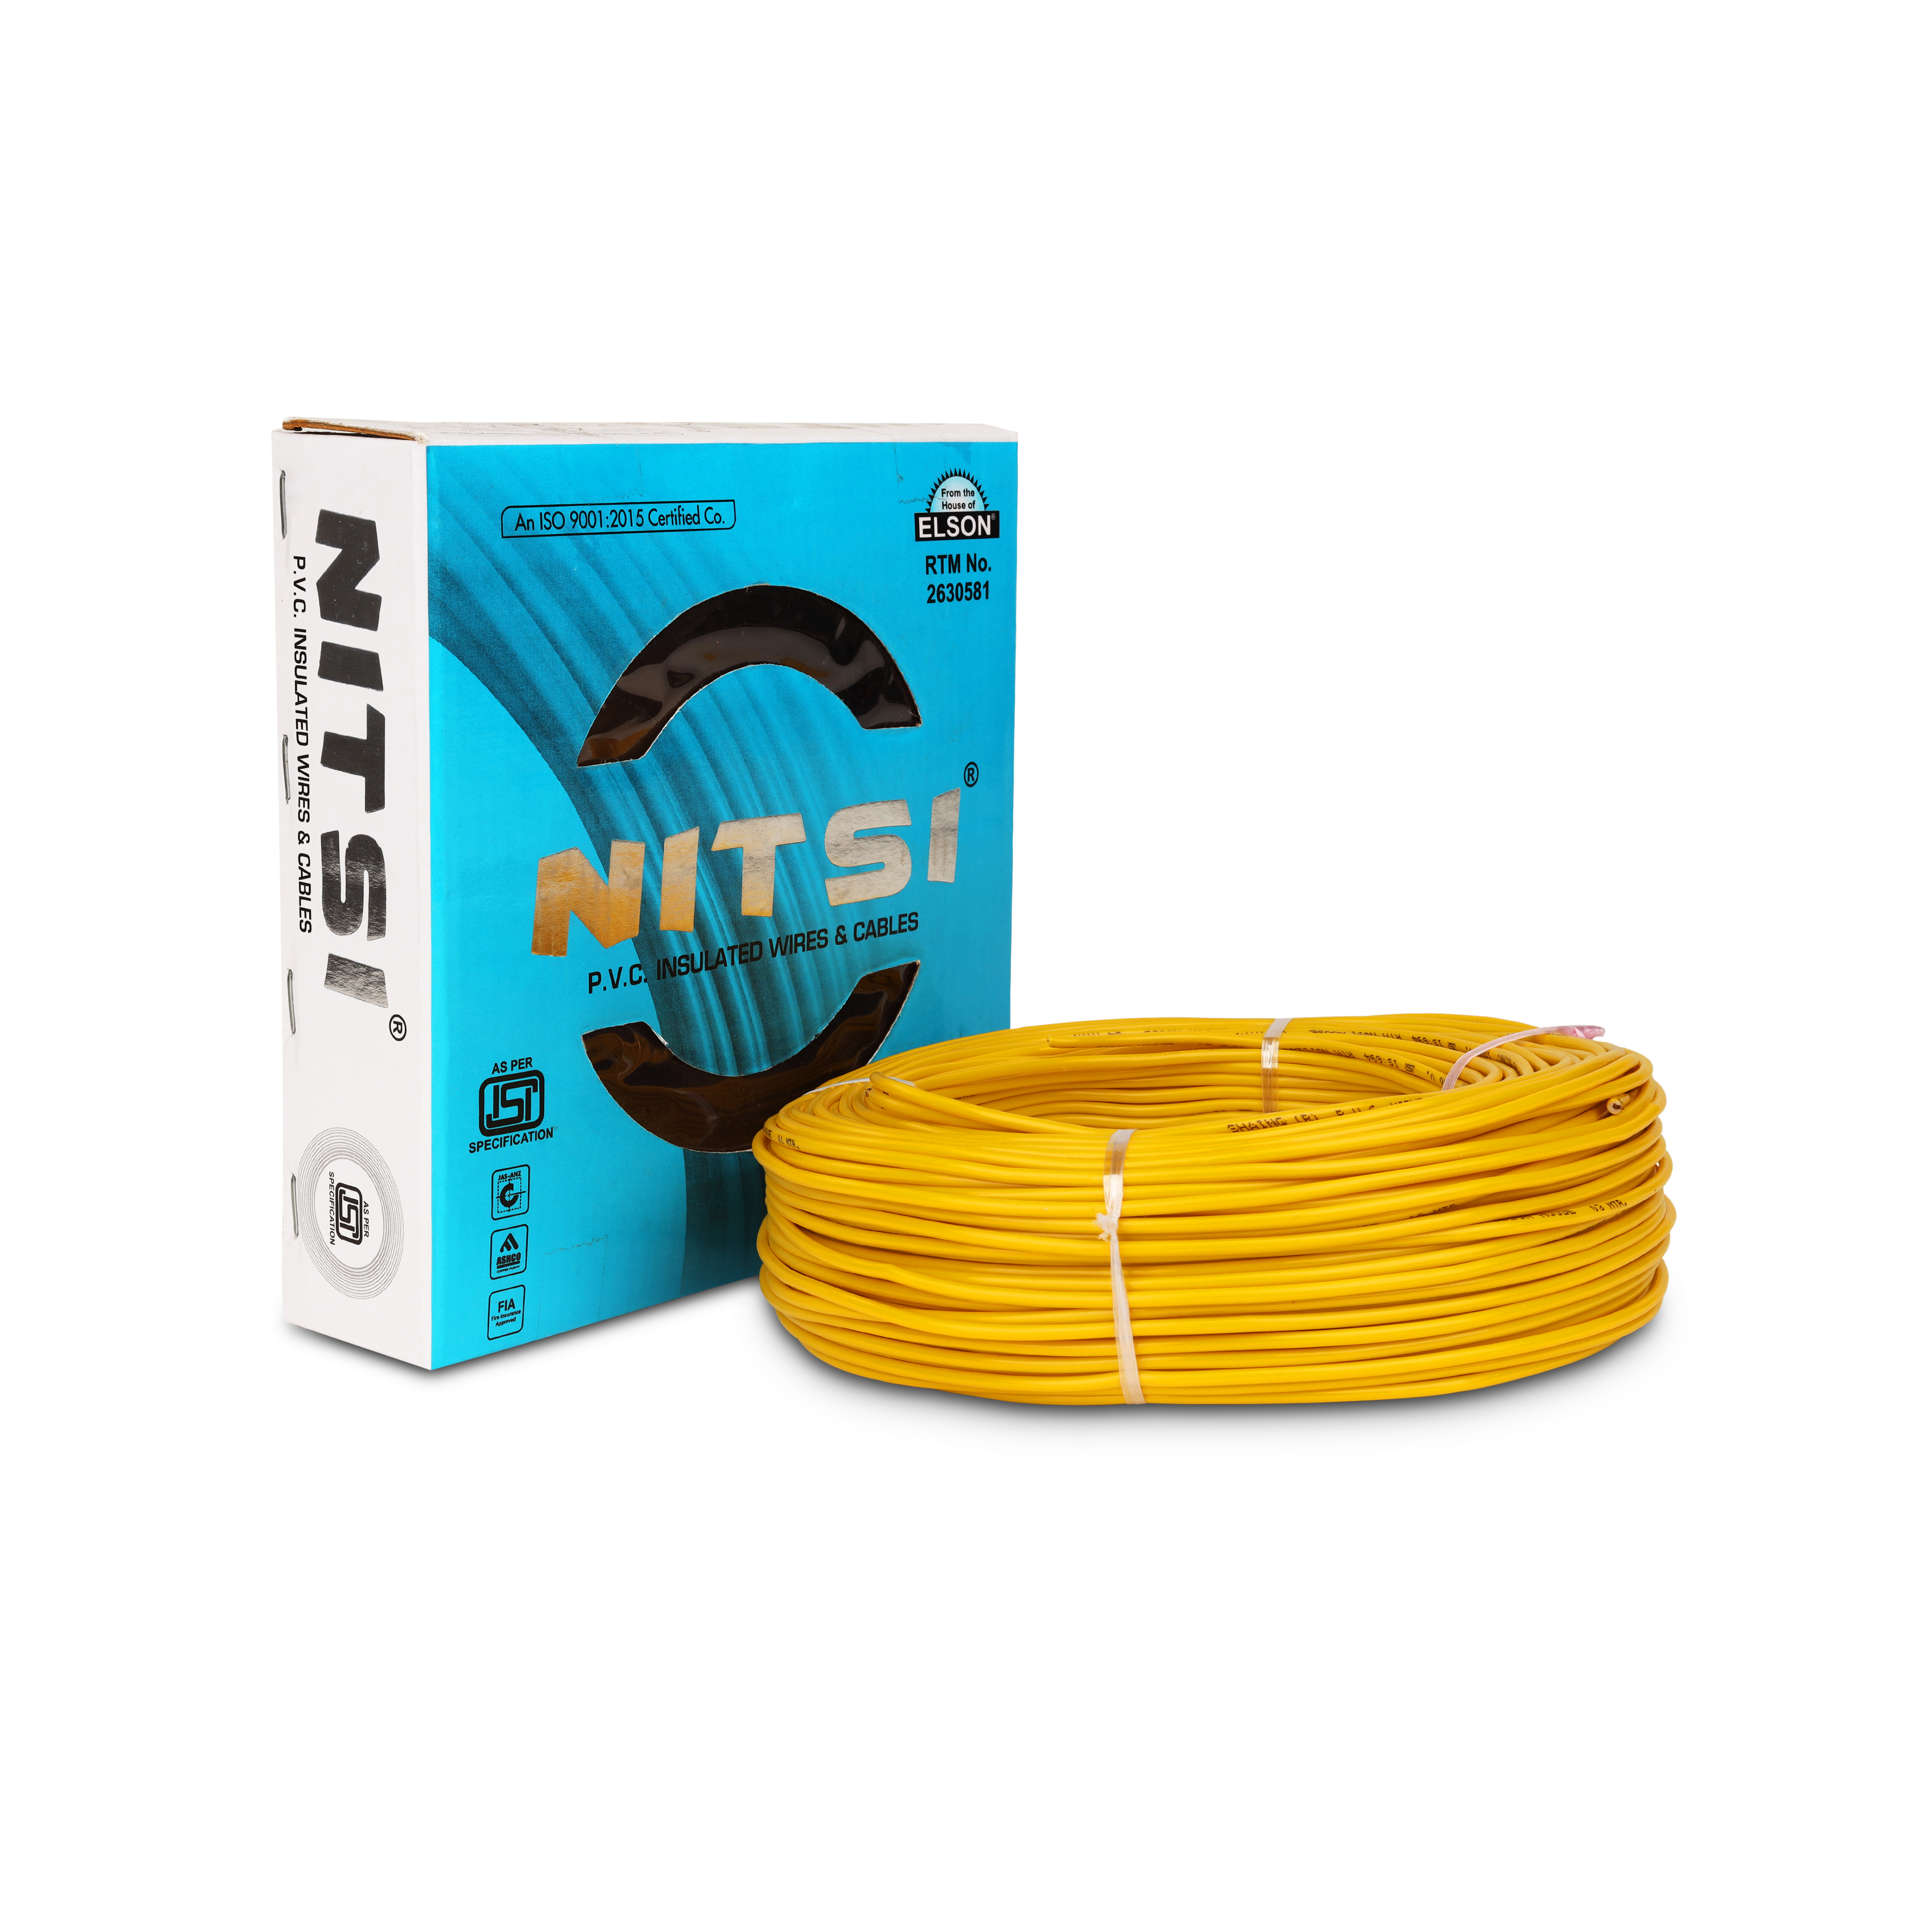 Multi strand wire 1.5 mm Manufacturers, Suppliers in Uttar Pradesh